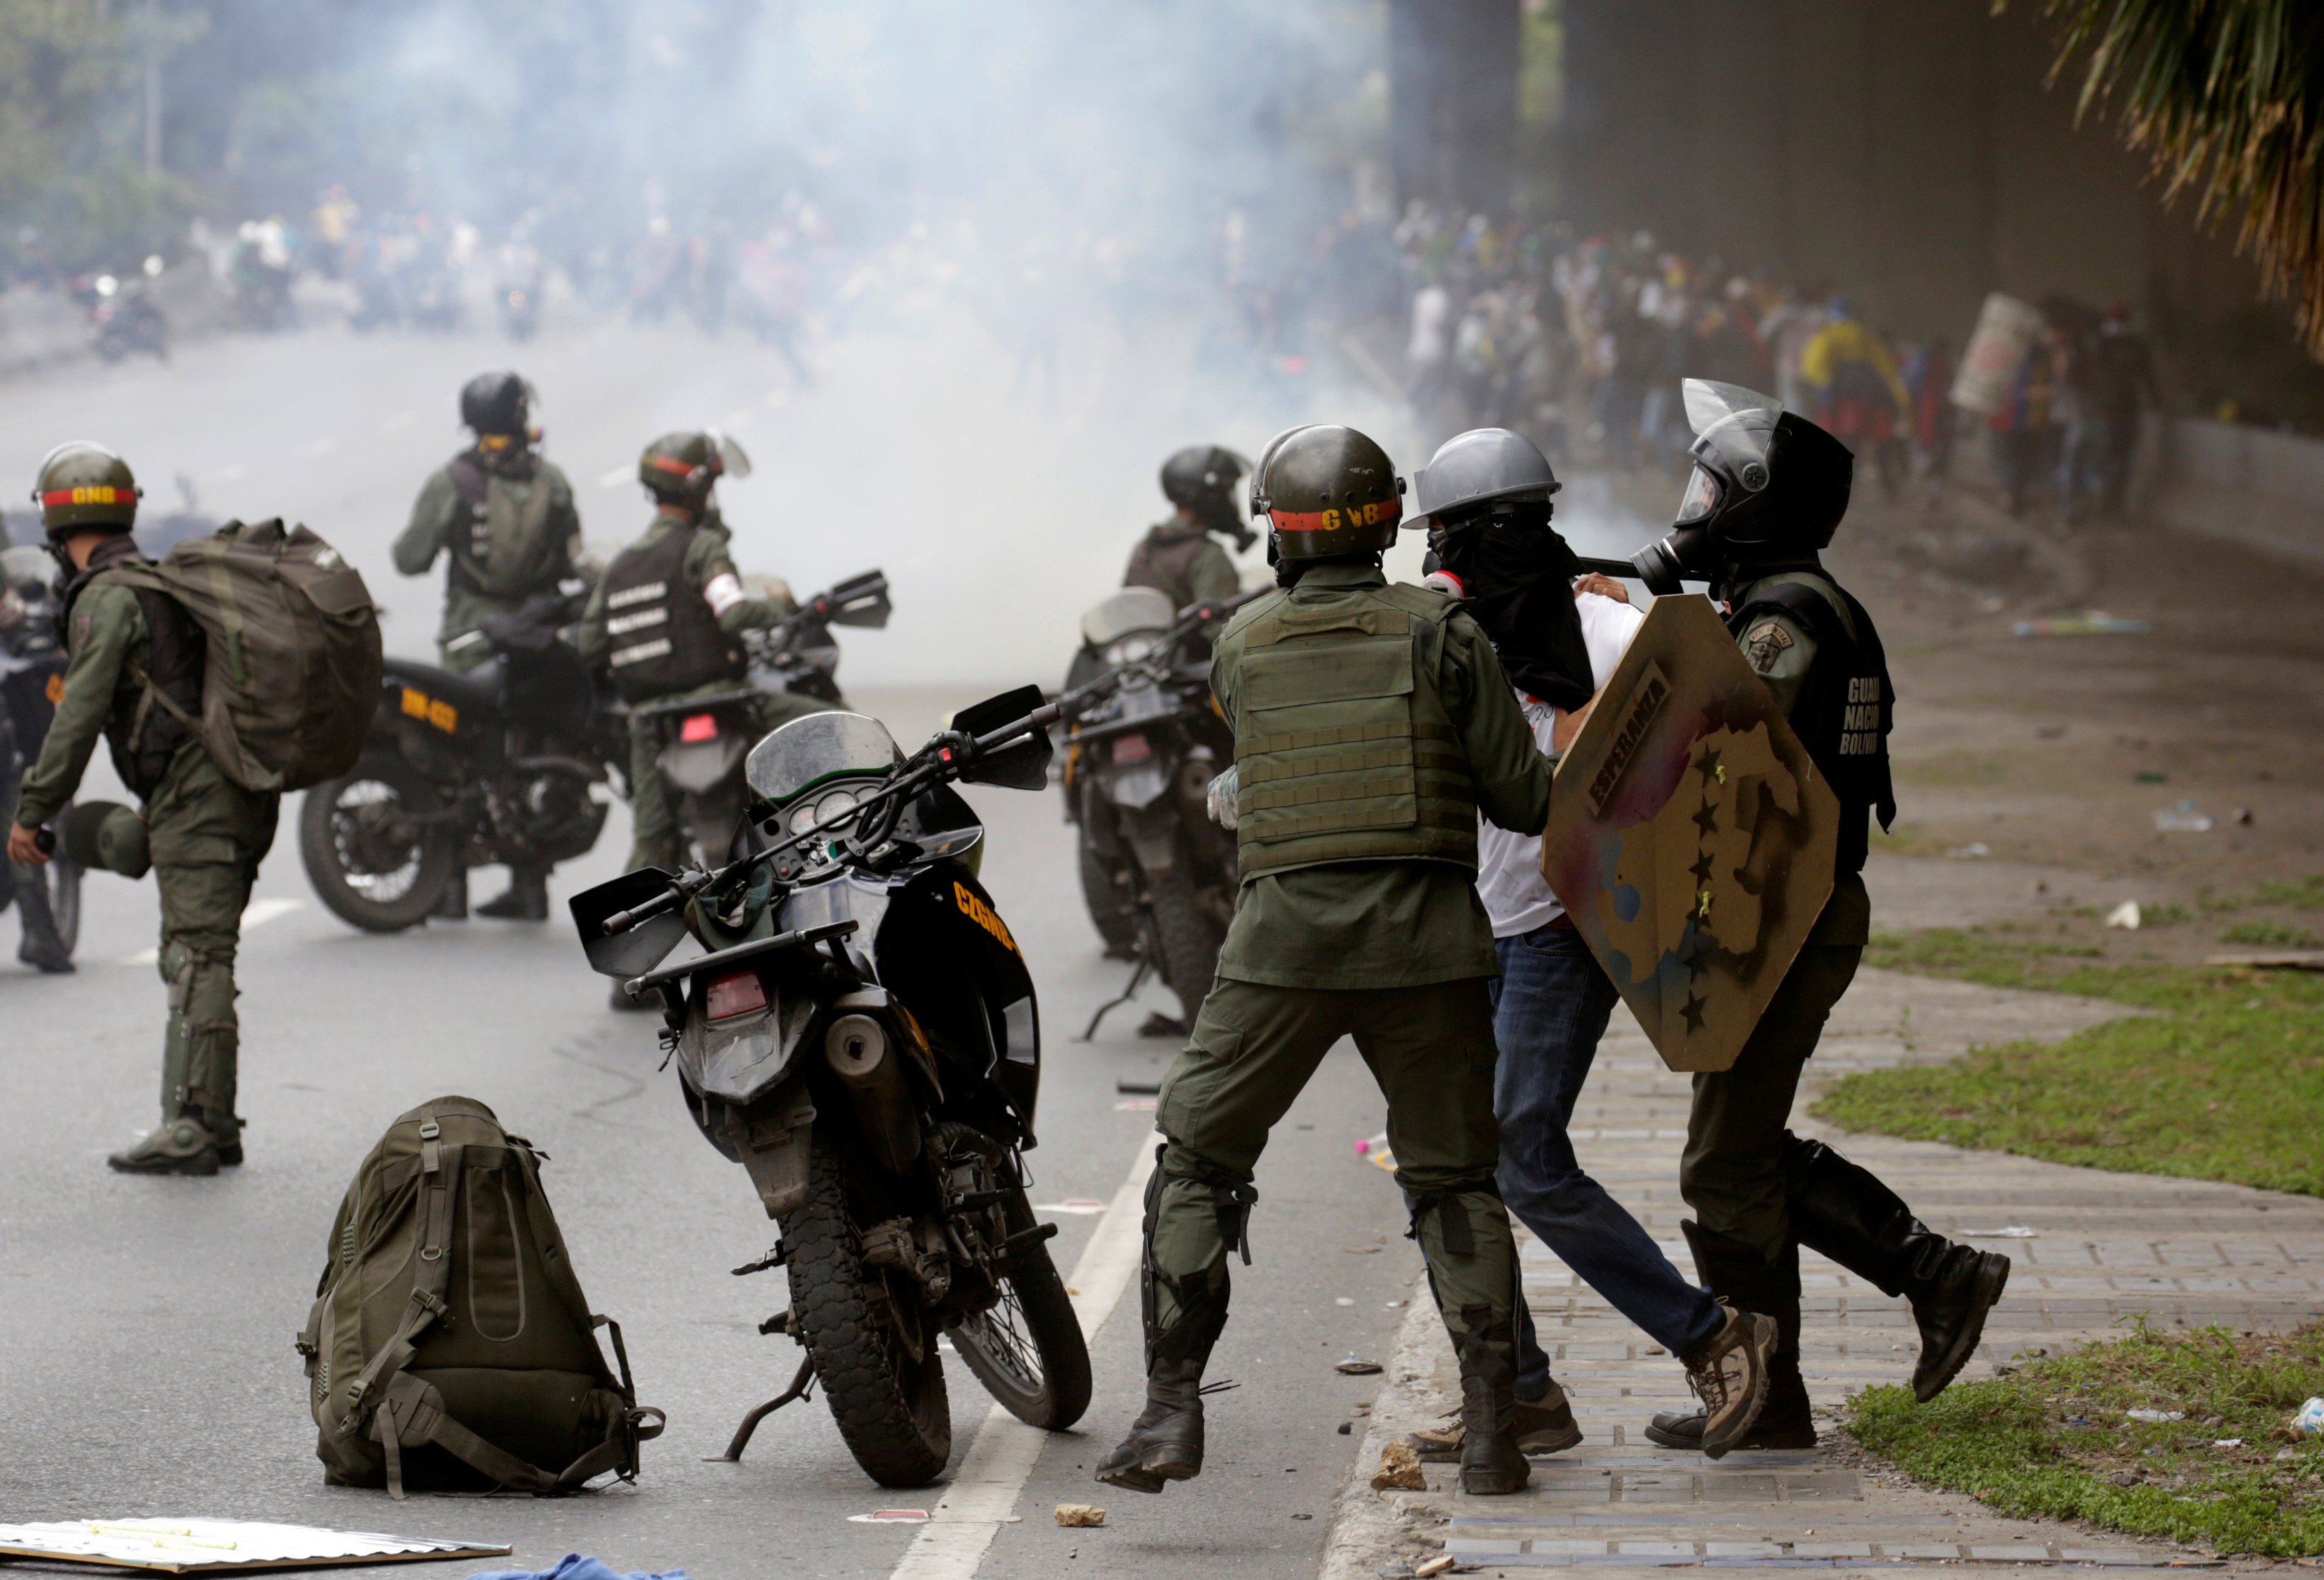 الشرطة الفنزويلية تطلق الغاز وتعتقل شخص